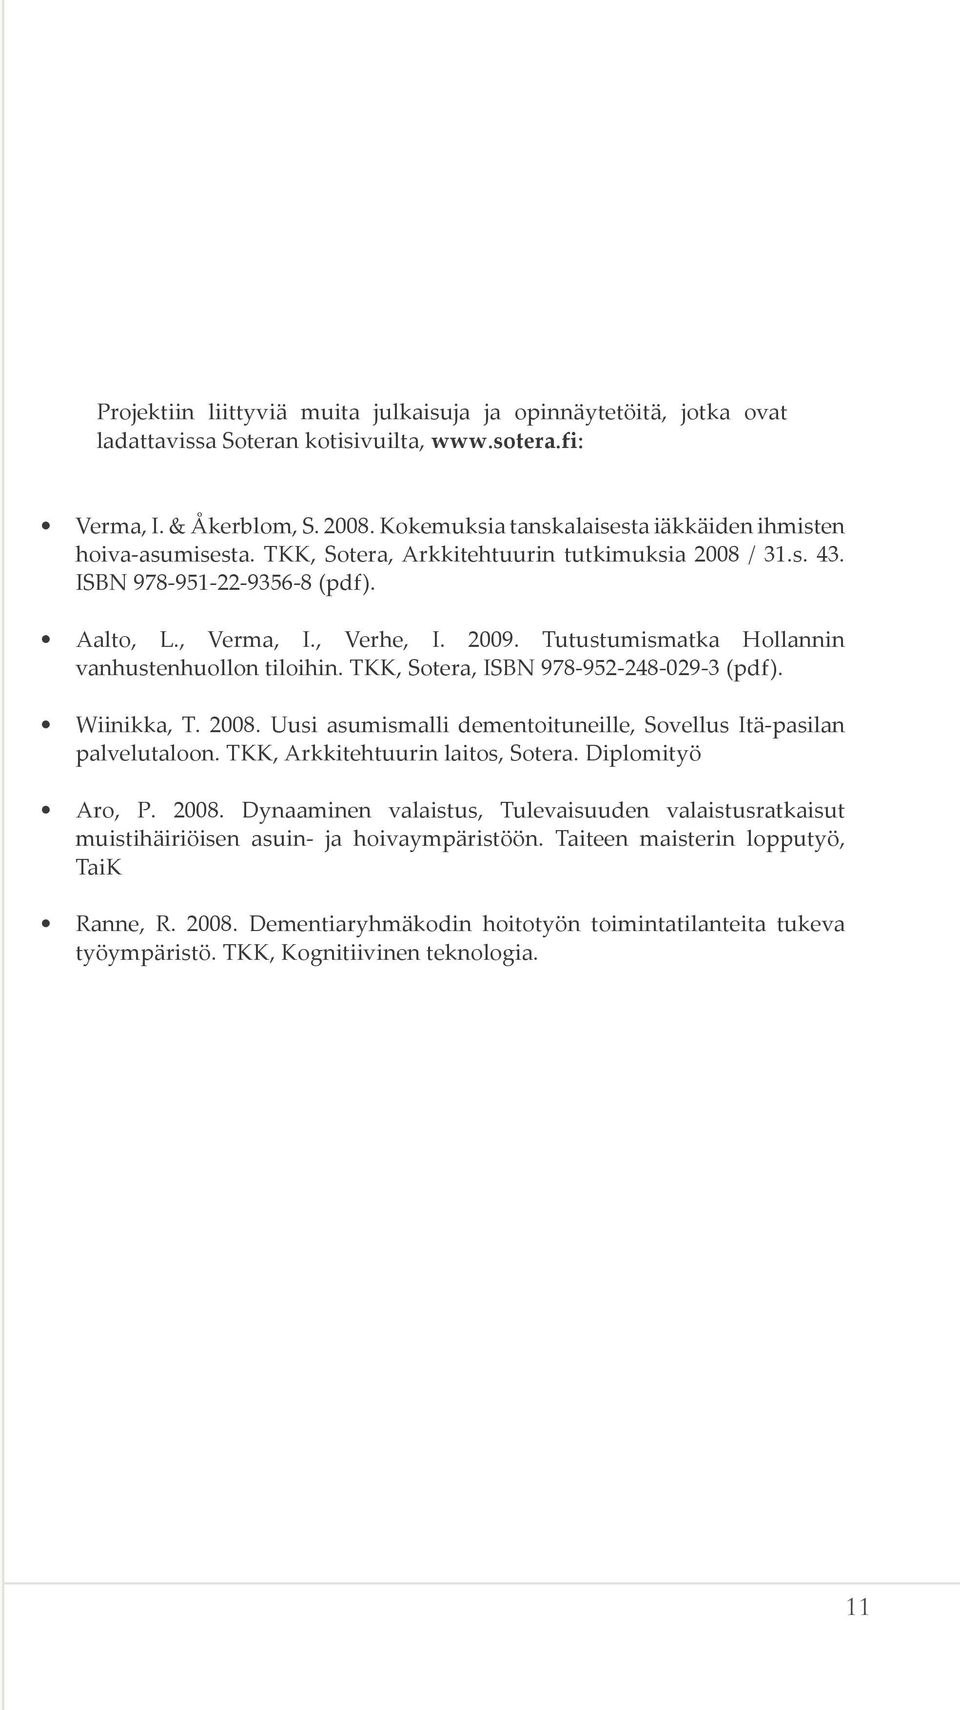 Tutustumismatka Hollannin vanhustenhuollon tiloihin. TKK, Sotera, ISBN 978-952-248-029-3 (pdf). Wiinikka, T. 2008. Uusi asumismalli dementoituneille, Sovellus Itä-pasilan palvelutaloon.